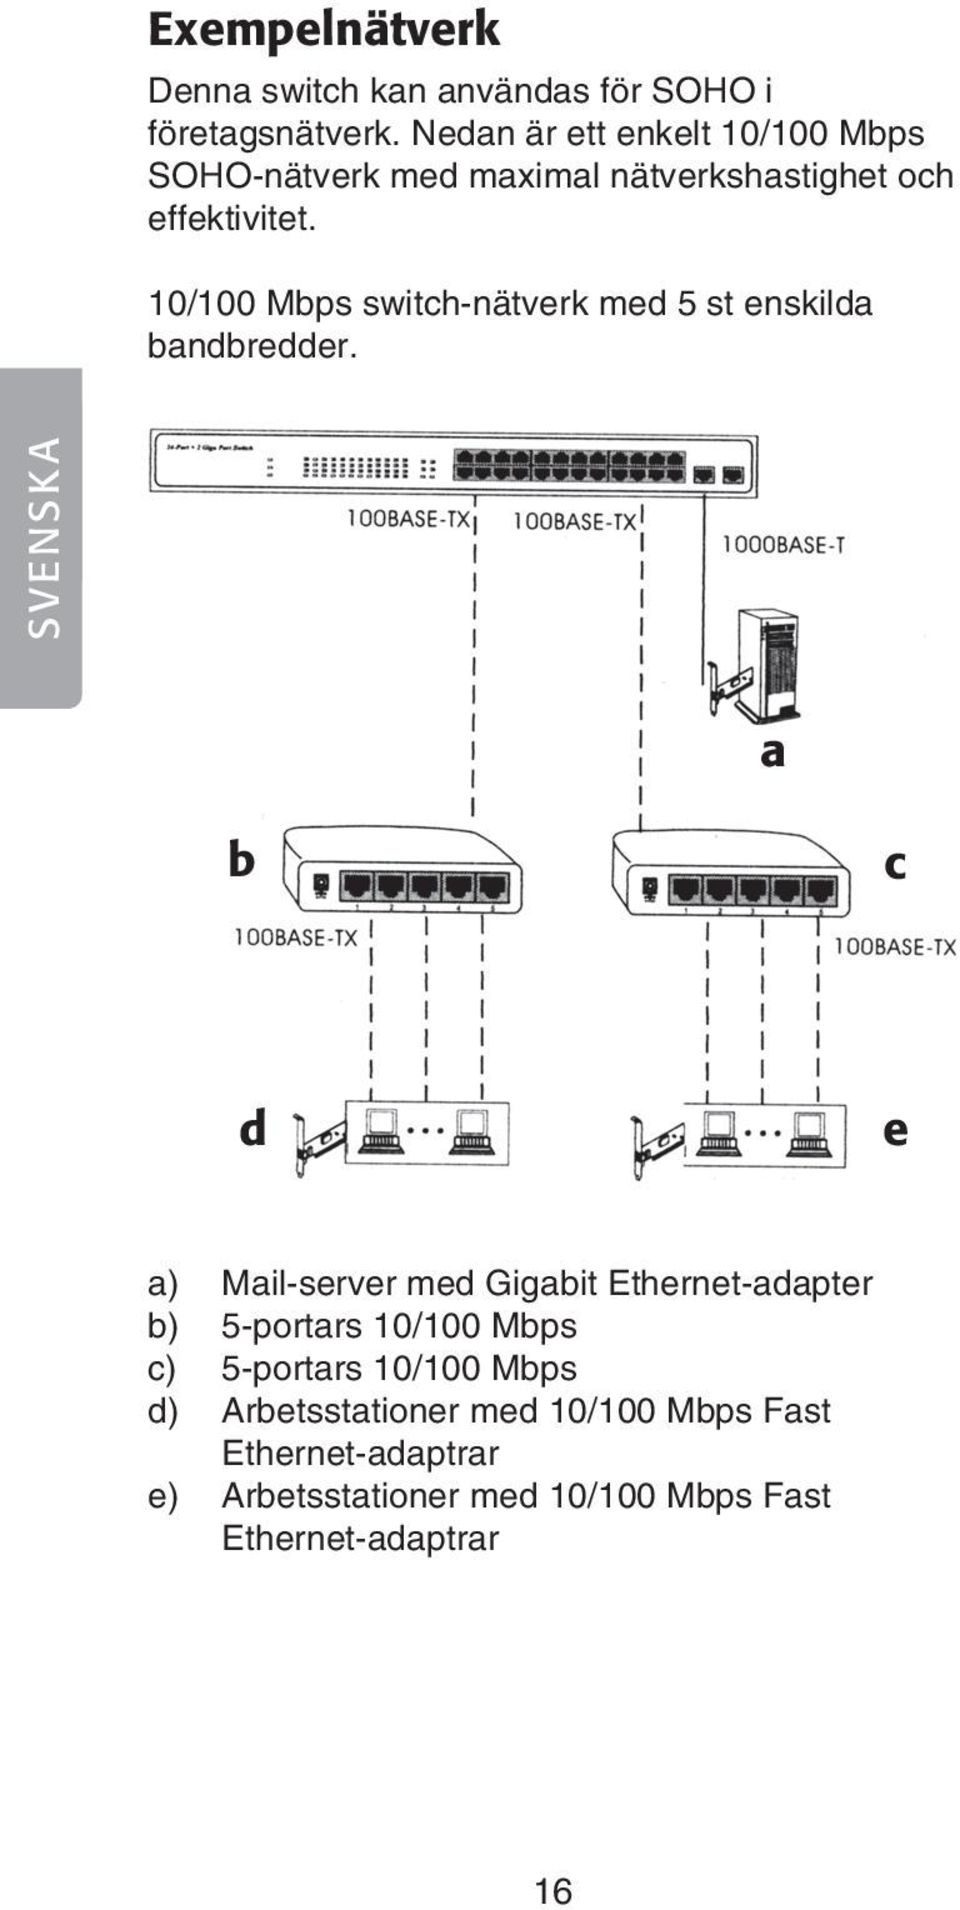 10/100 Mbps switch-nätverk med 5 st enskilda bandbredder.